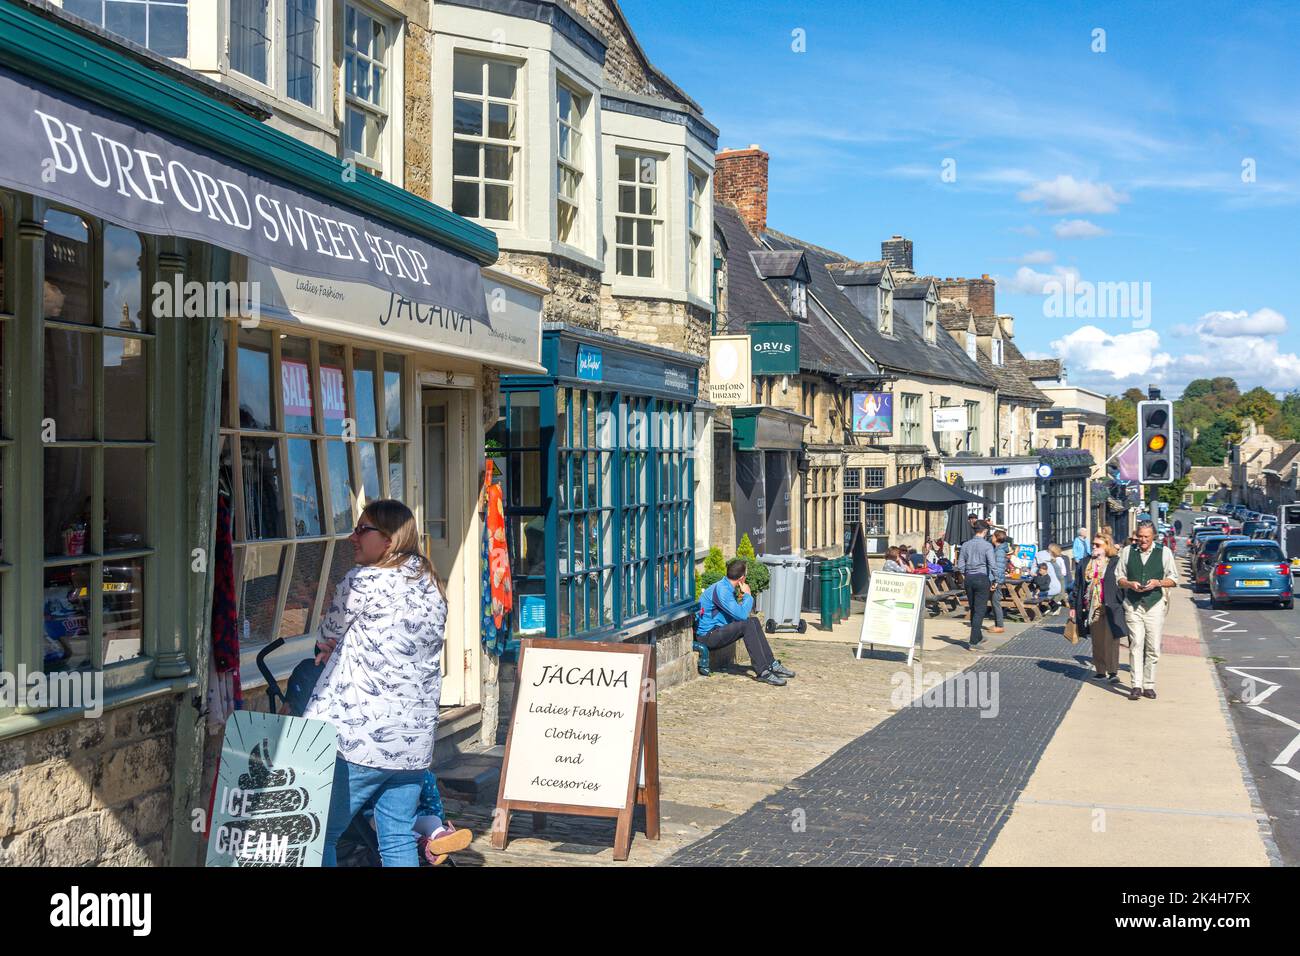 Geschäfte und die Meerjungfrau in Burford Pub, High Street, Burford, Oxfordshire, England, Vereinigtes Königreich Stockfoto